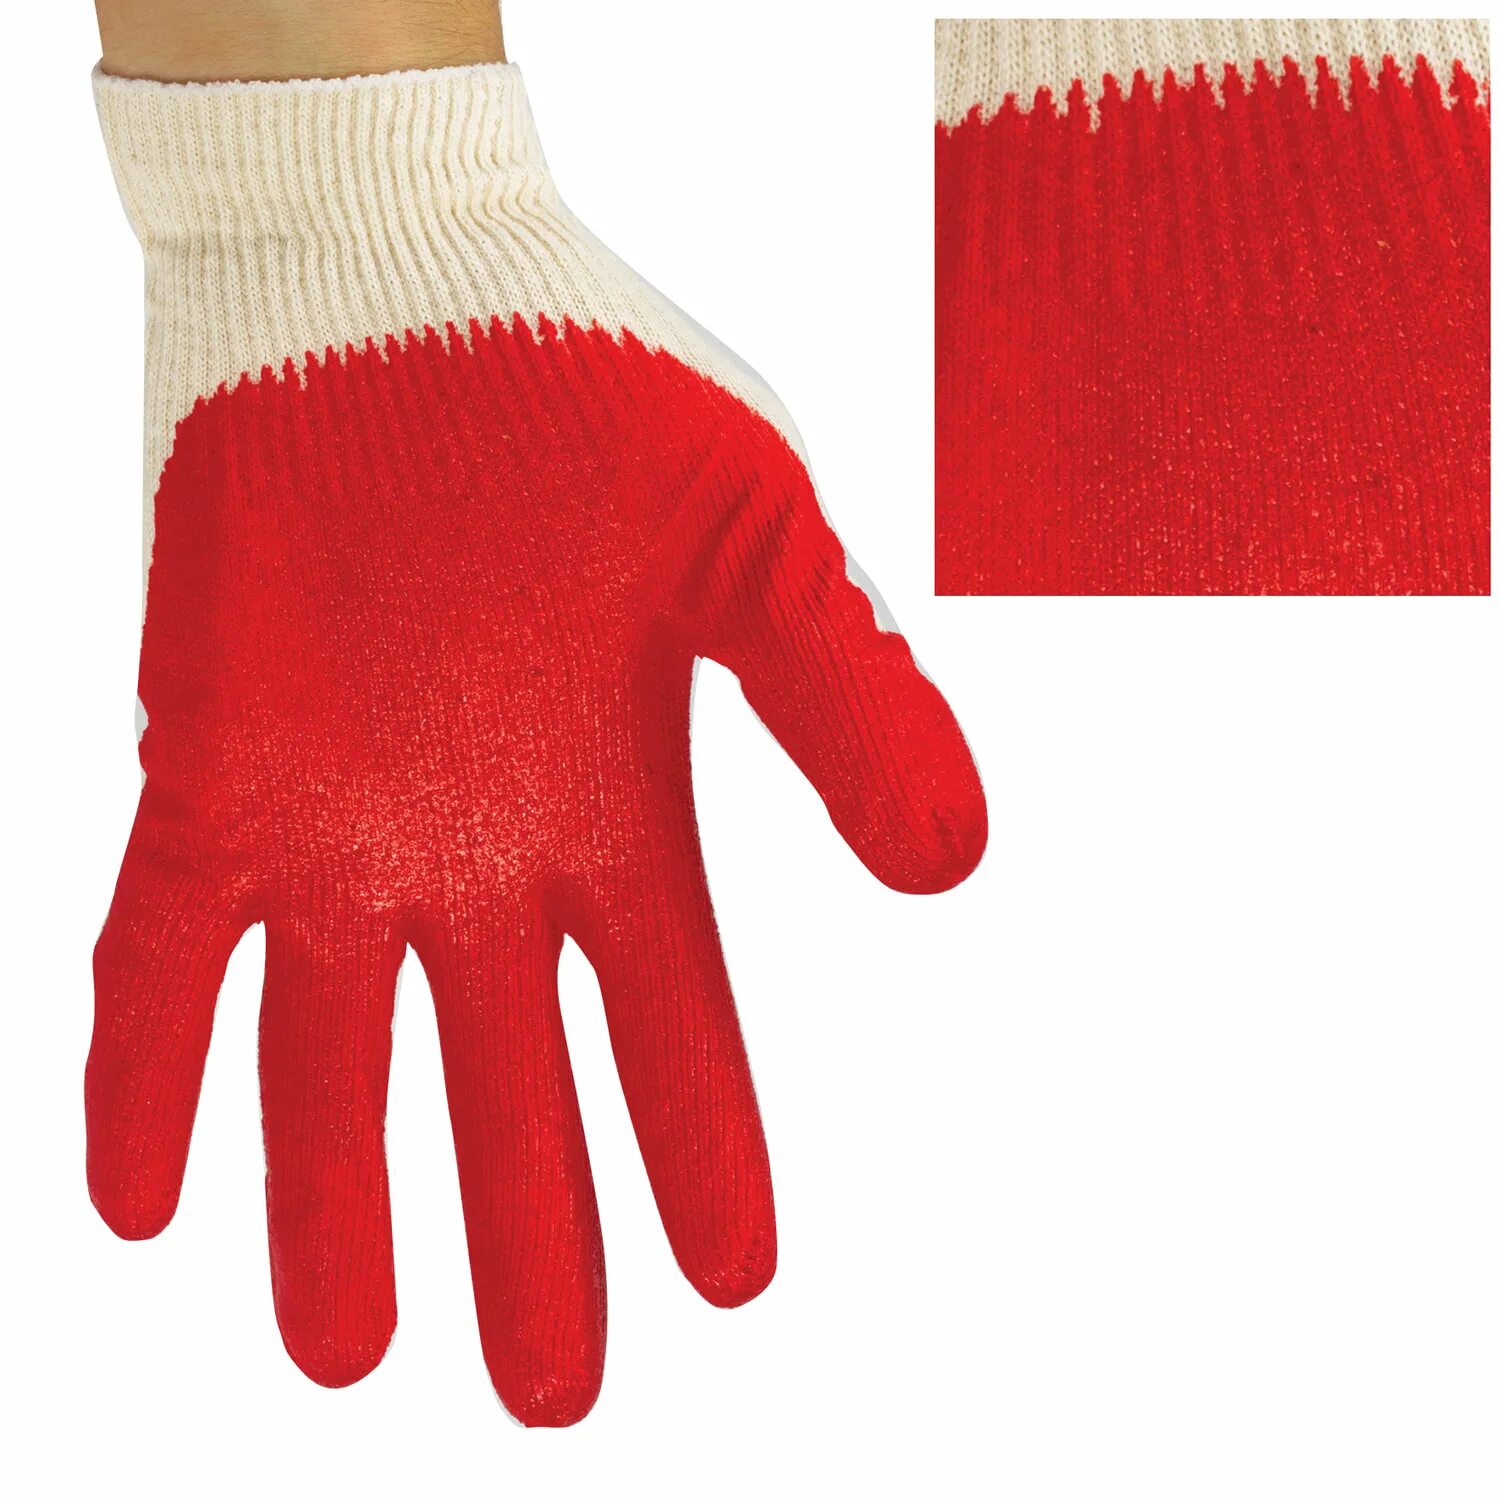 Х б перчатки 13 класс. Хлопчатобумажные перчатки Mavala Gants Gloves. Перчатки х/б, одинарный латексный облив Люкс (СВС).